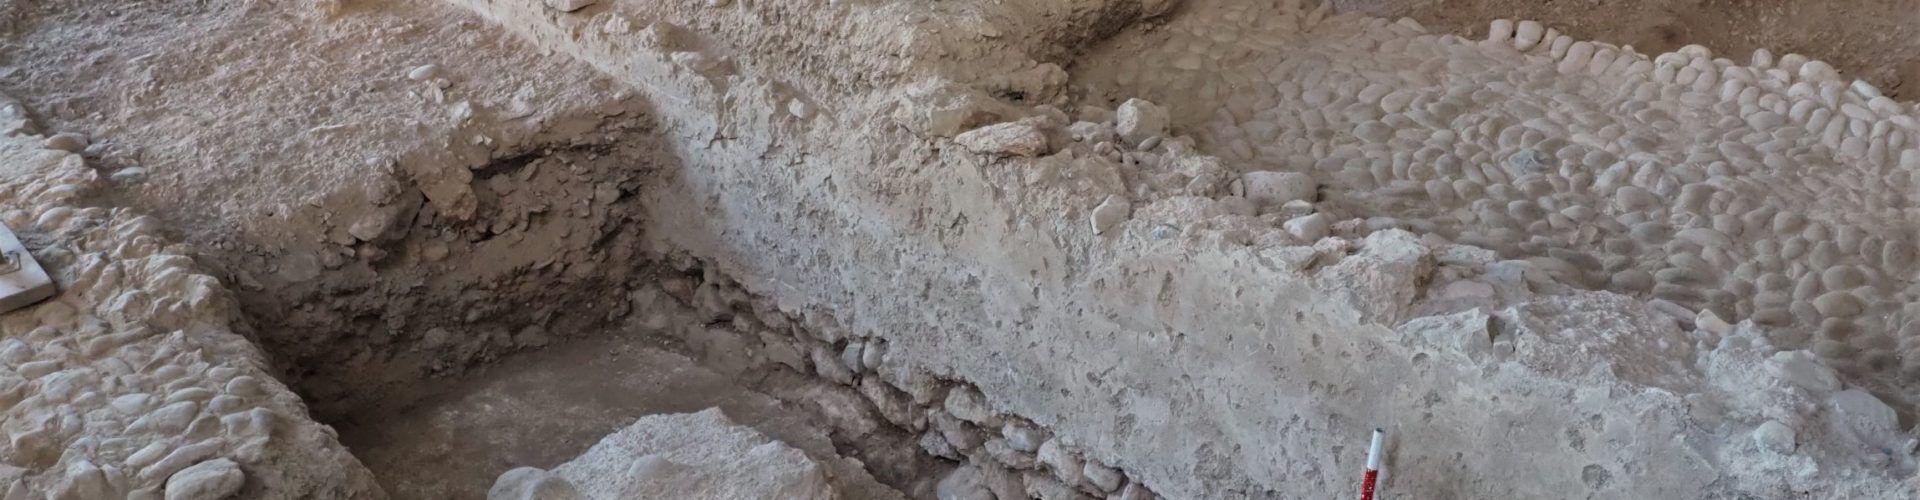 Més troballes de la història de Vinaròs a la Cotxera de Batet, com  nous trams de la muralla i restes de projectils del XVII (i II)